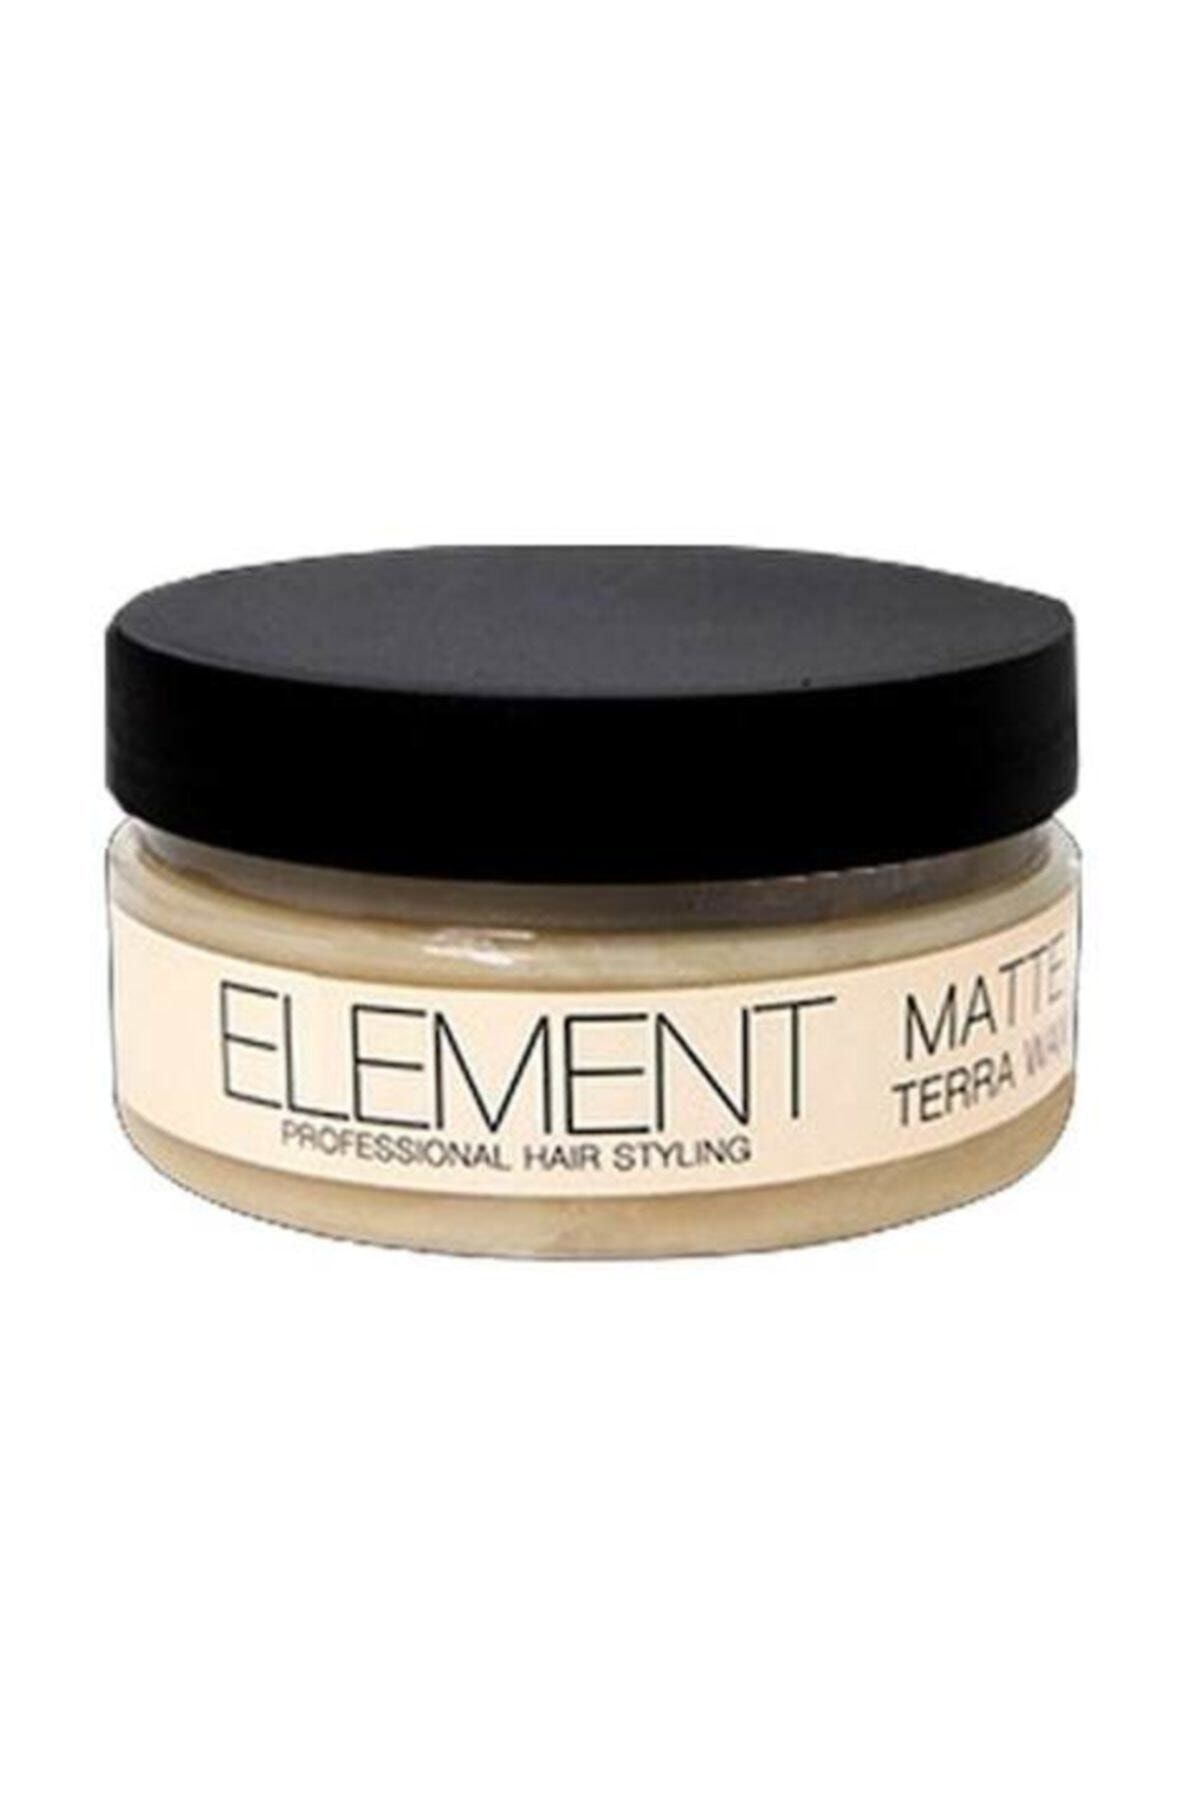 Element Matte Terra Wax 150 Ml No 2 Mat Wax